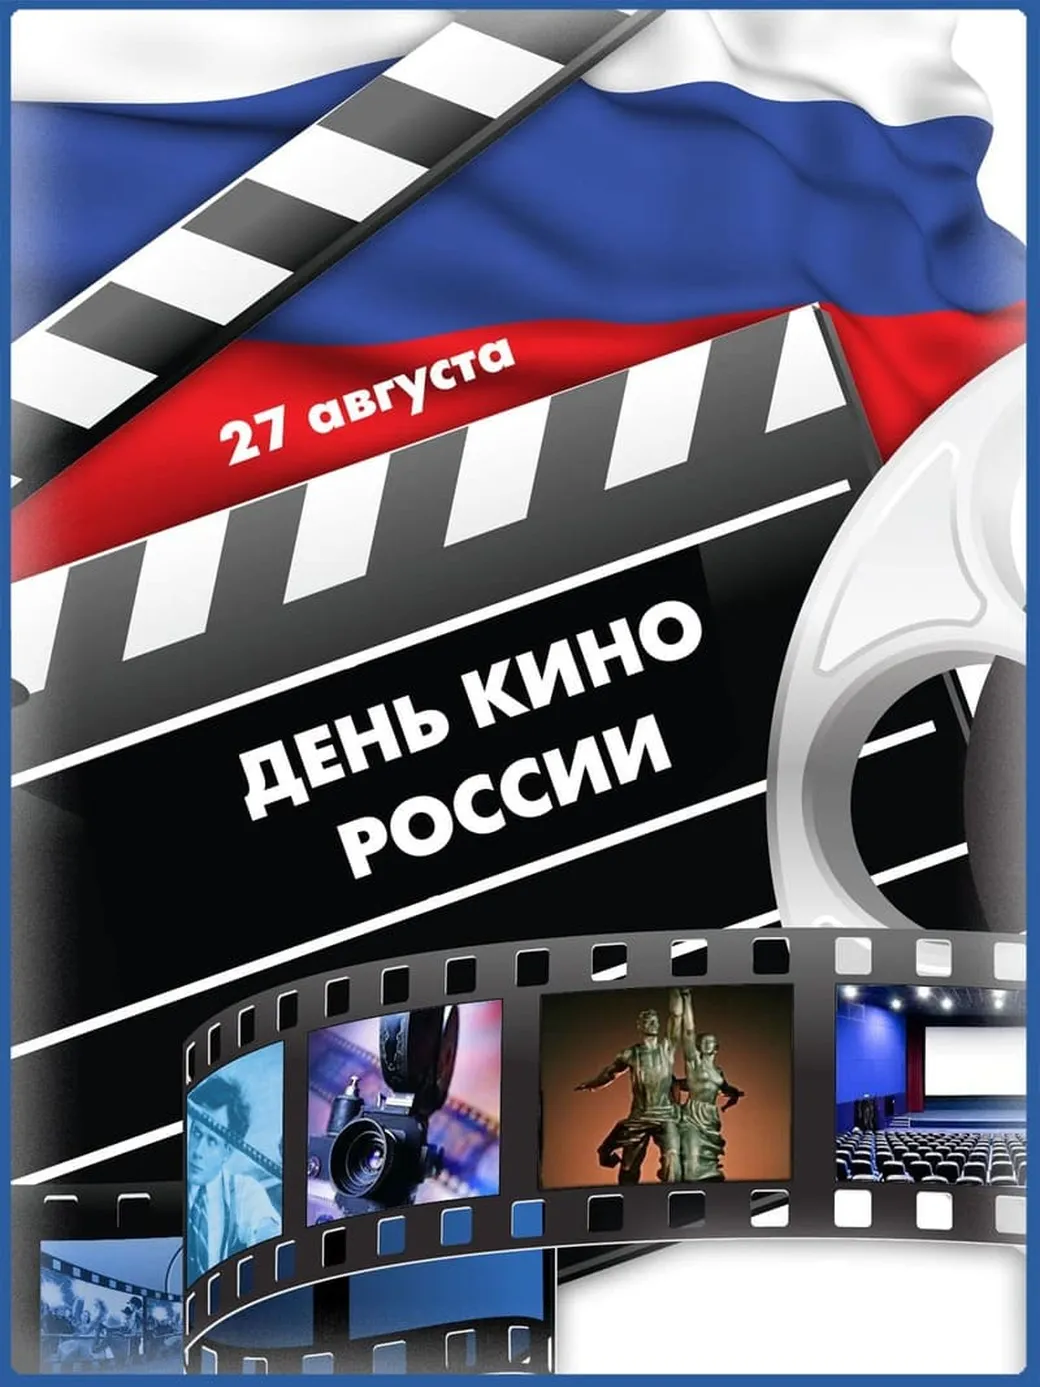 Открытка с днем Российского кино в Вайбер или Вацап